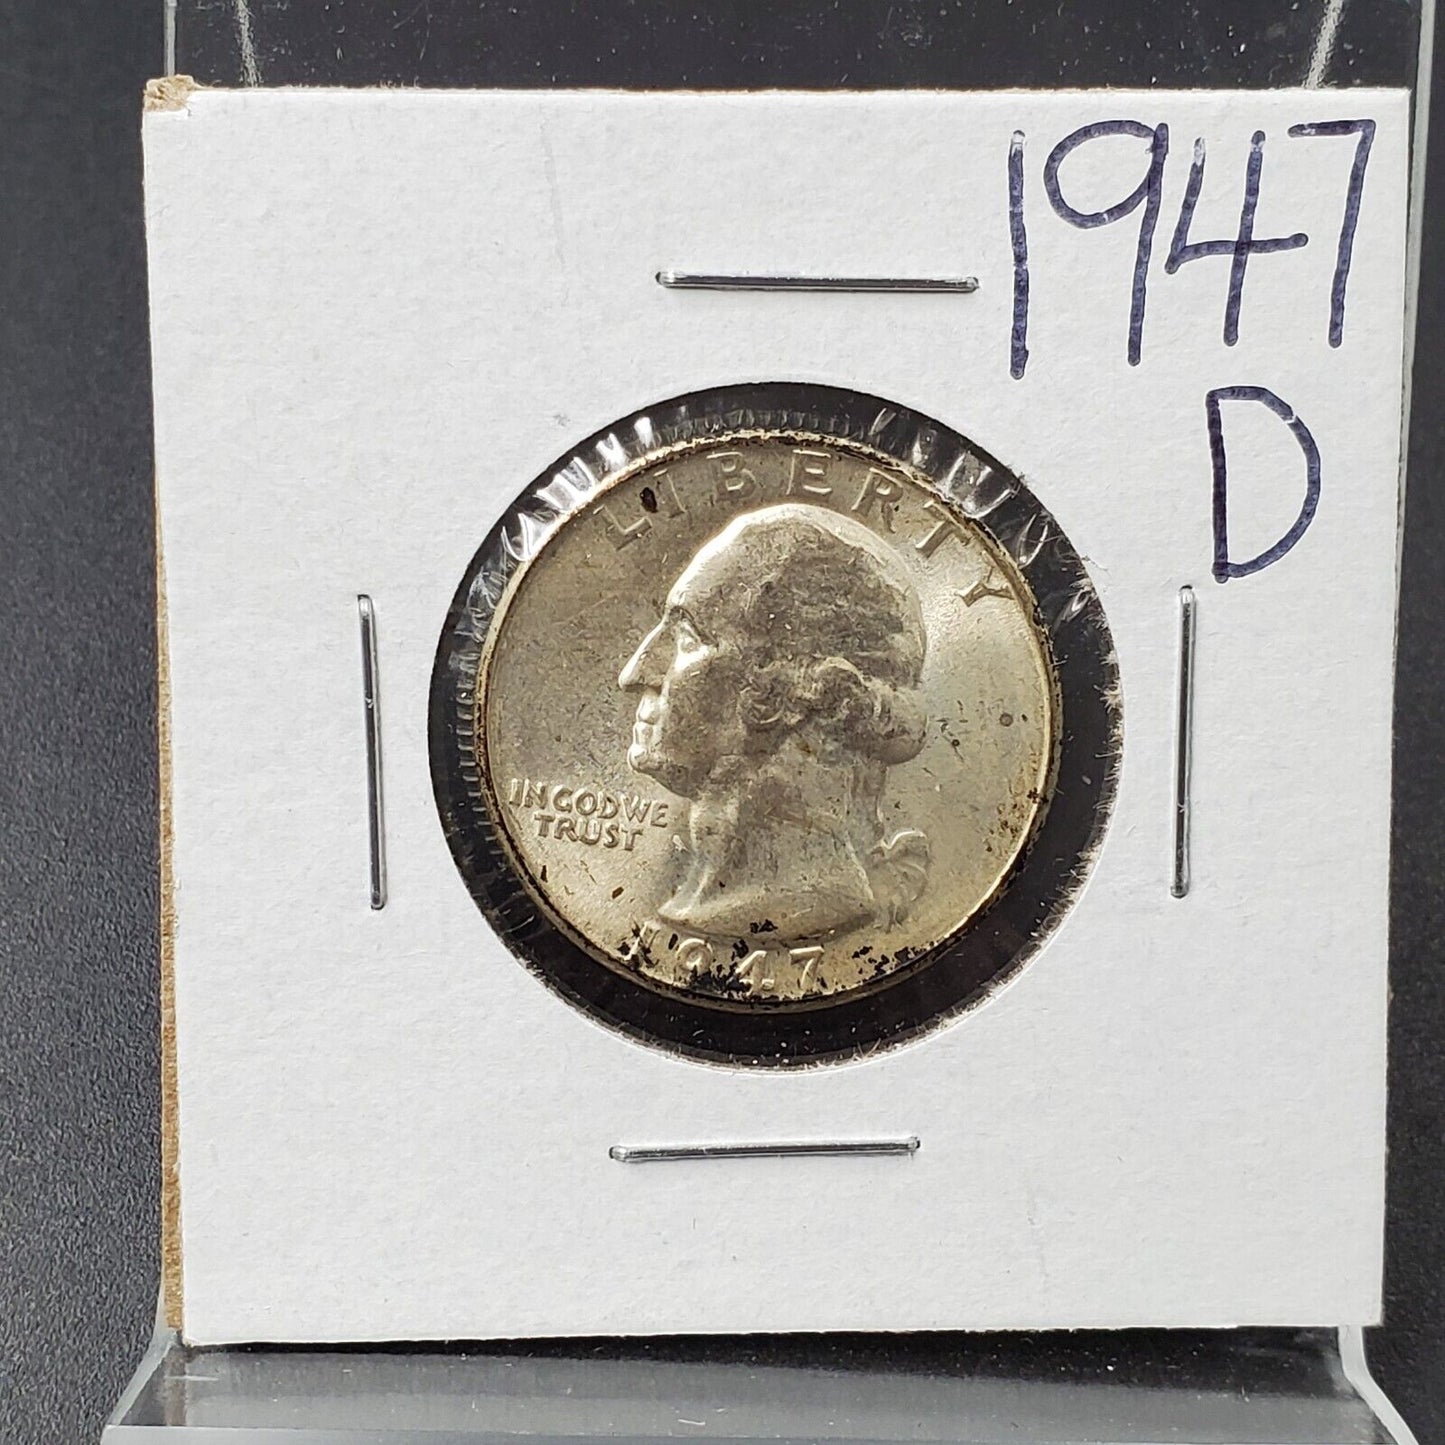 1947 D Washington Silver Quarter Coin BU UNC Uncirculated Neat Toning